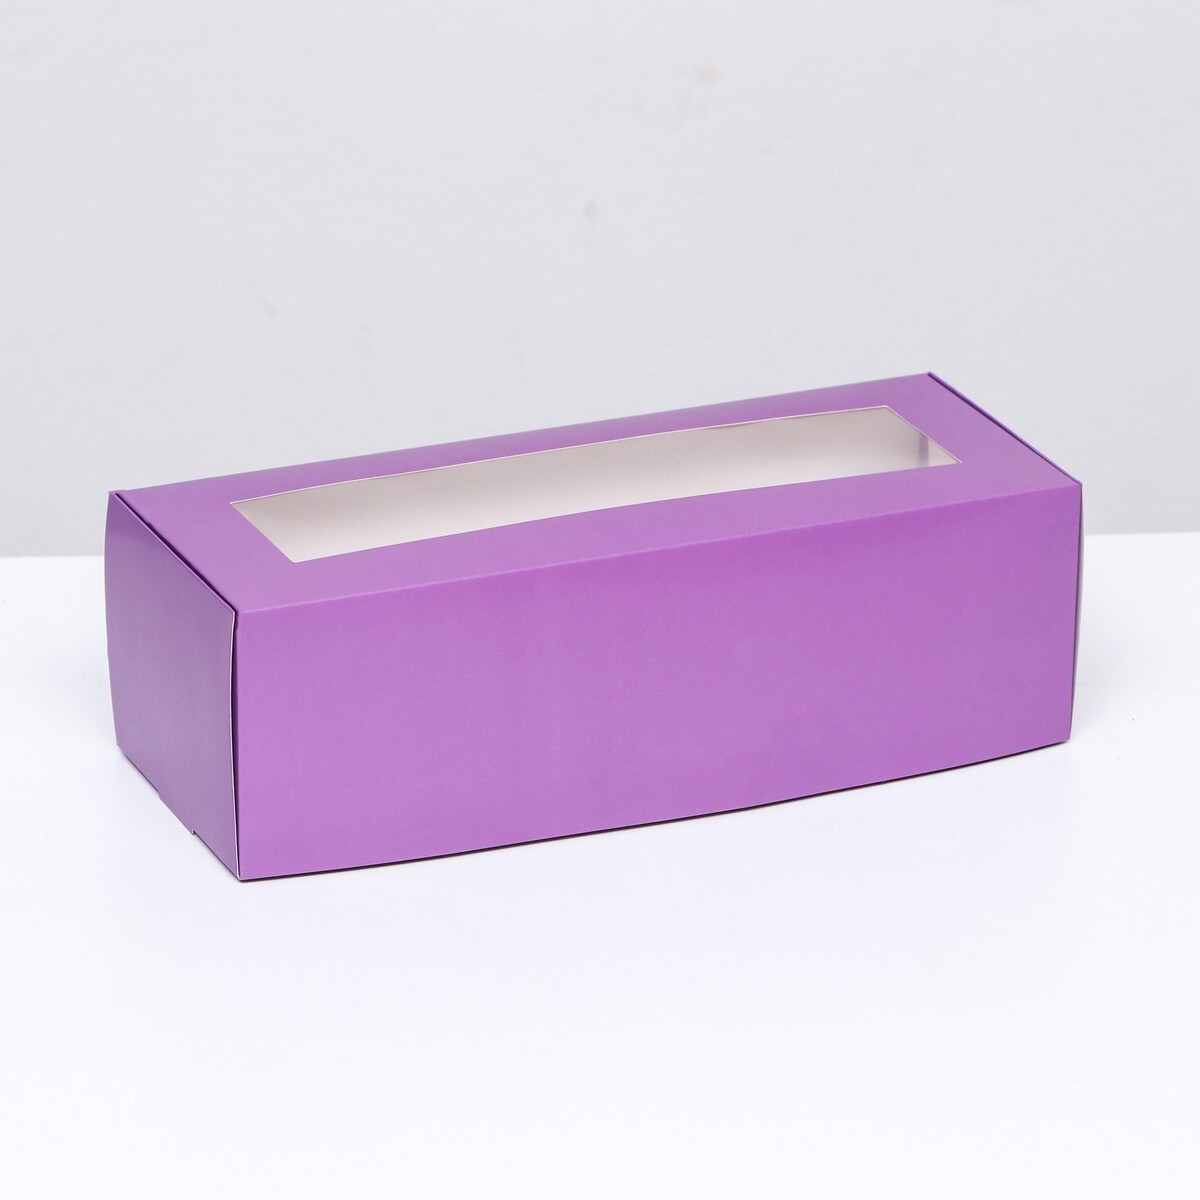 Коробка складная с окном под рулет, сиреневая, 26 х 10 х 8 см коробка под рулет белая 18 5 х 6 5 х 6 5 см